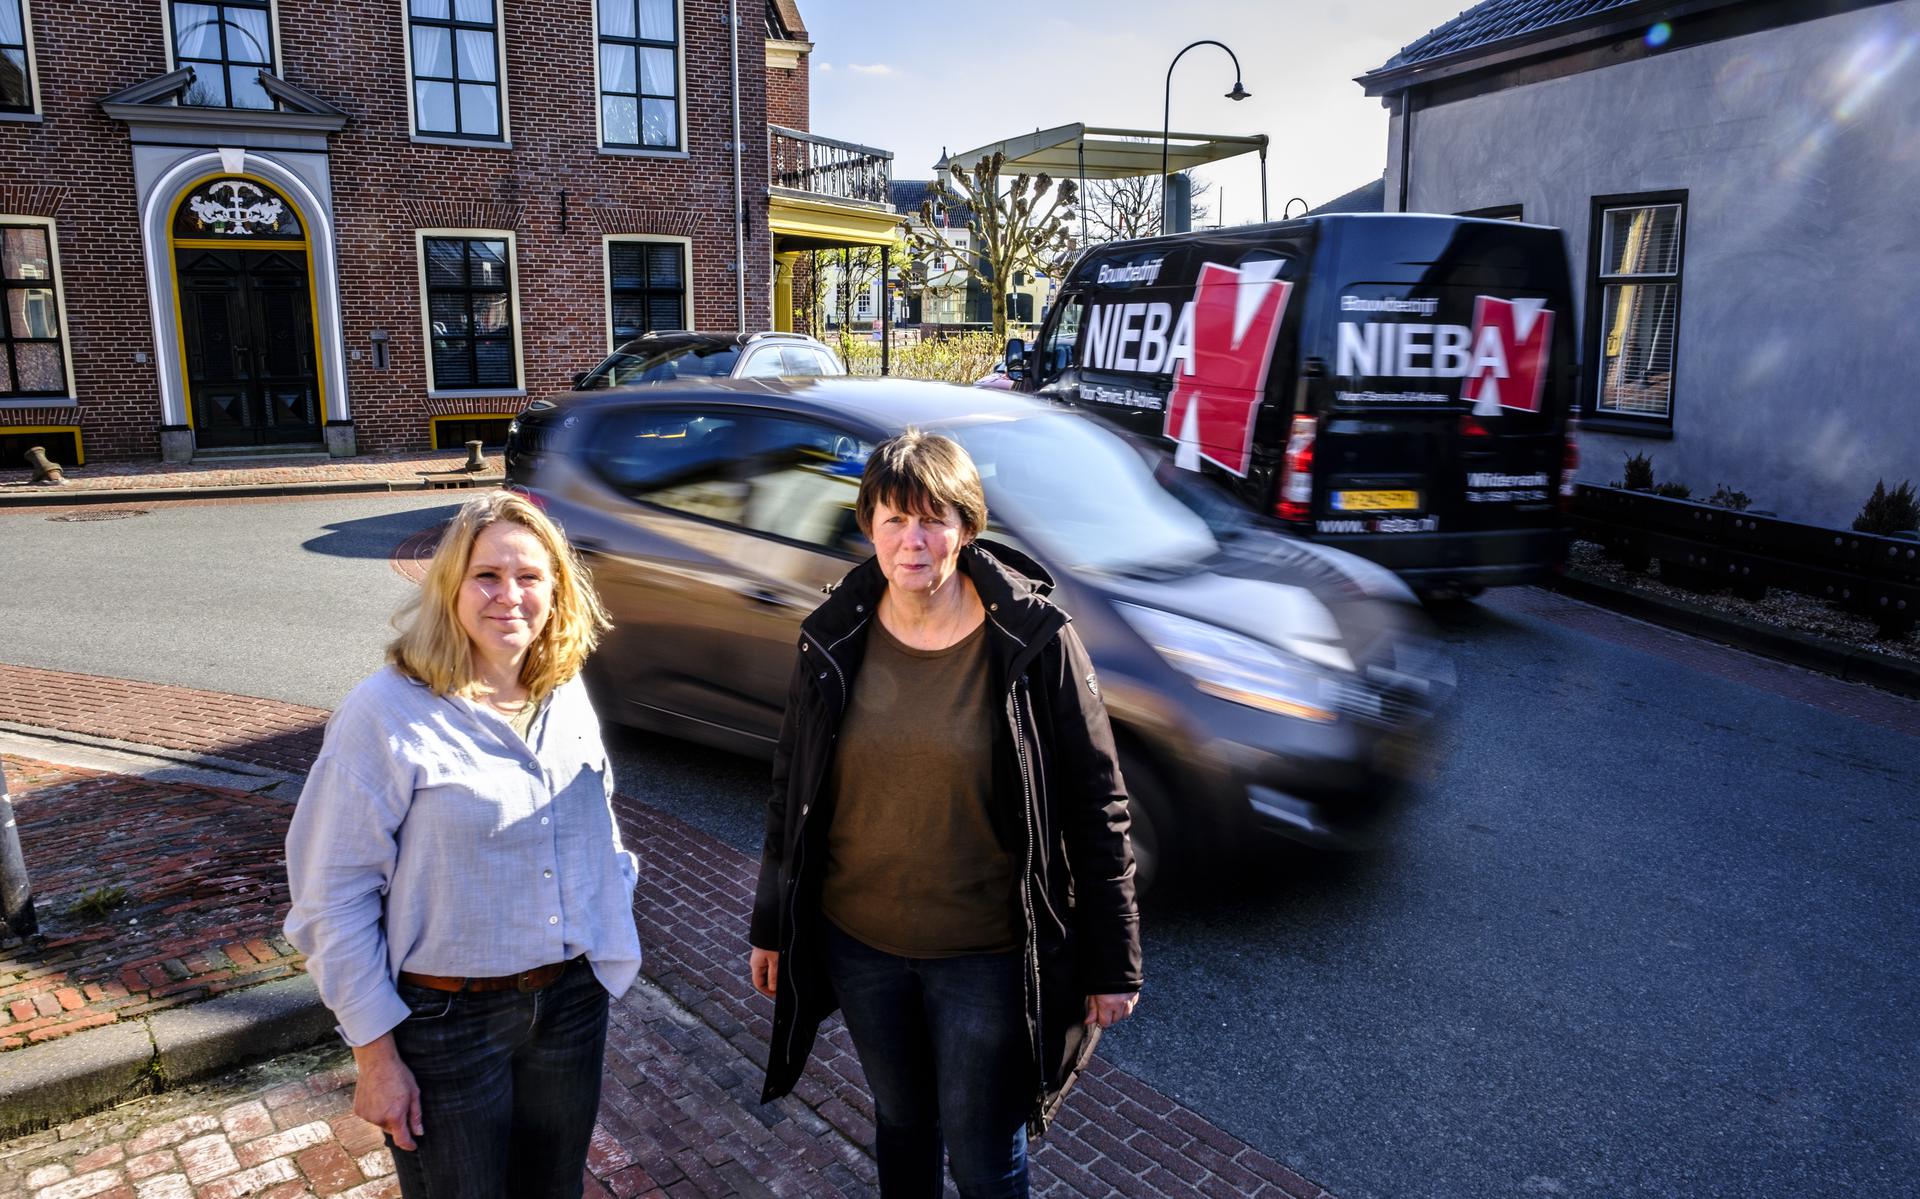 Irma Schuurman van Dorpsberaad Onderdendam en Afiena Benthem van Verkeerscommissie Onderdendam willen meer dan een vrachtautoverbod. De provincie moet de verkeersproblematiek in de regio onderzoeken en aanpakken 'kijk breder, kijk groter’.